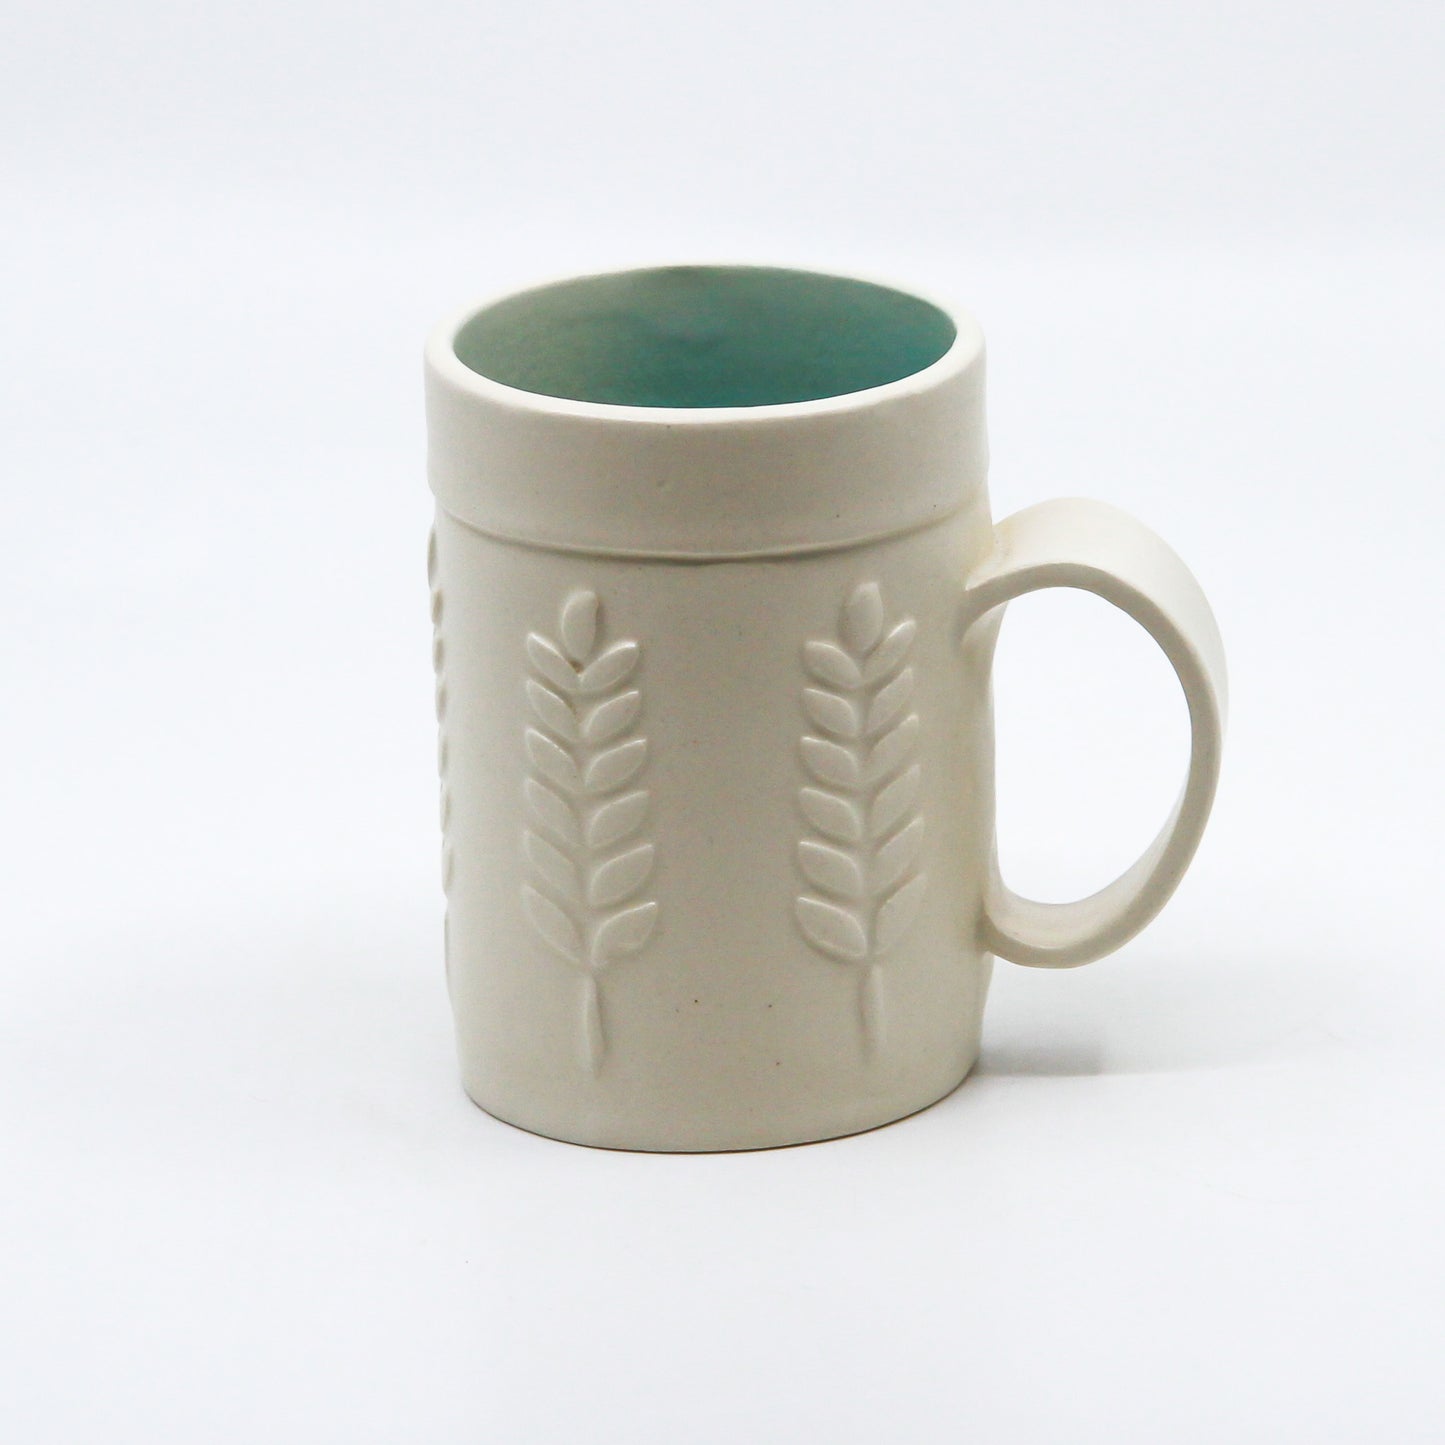 White & Turquoise Mug - Wheat Series